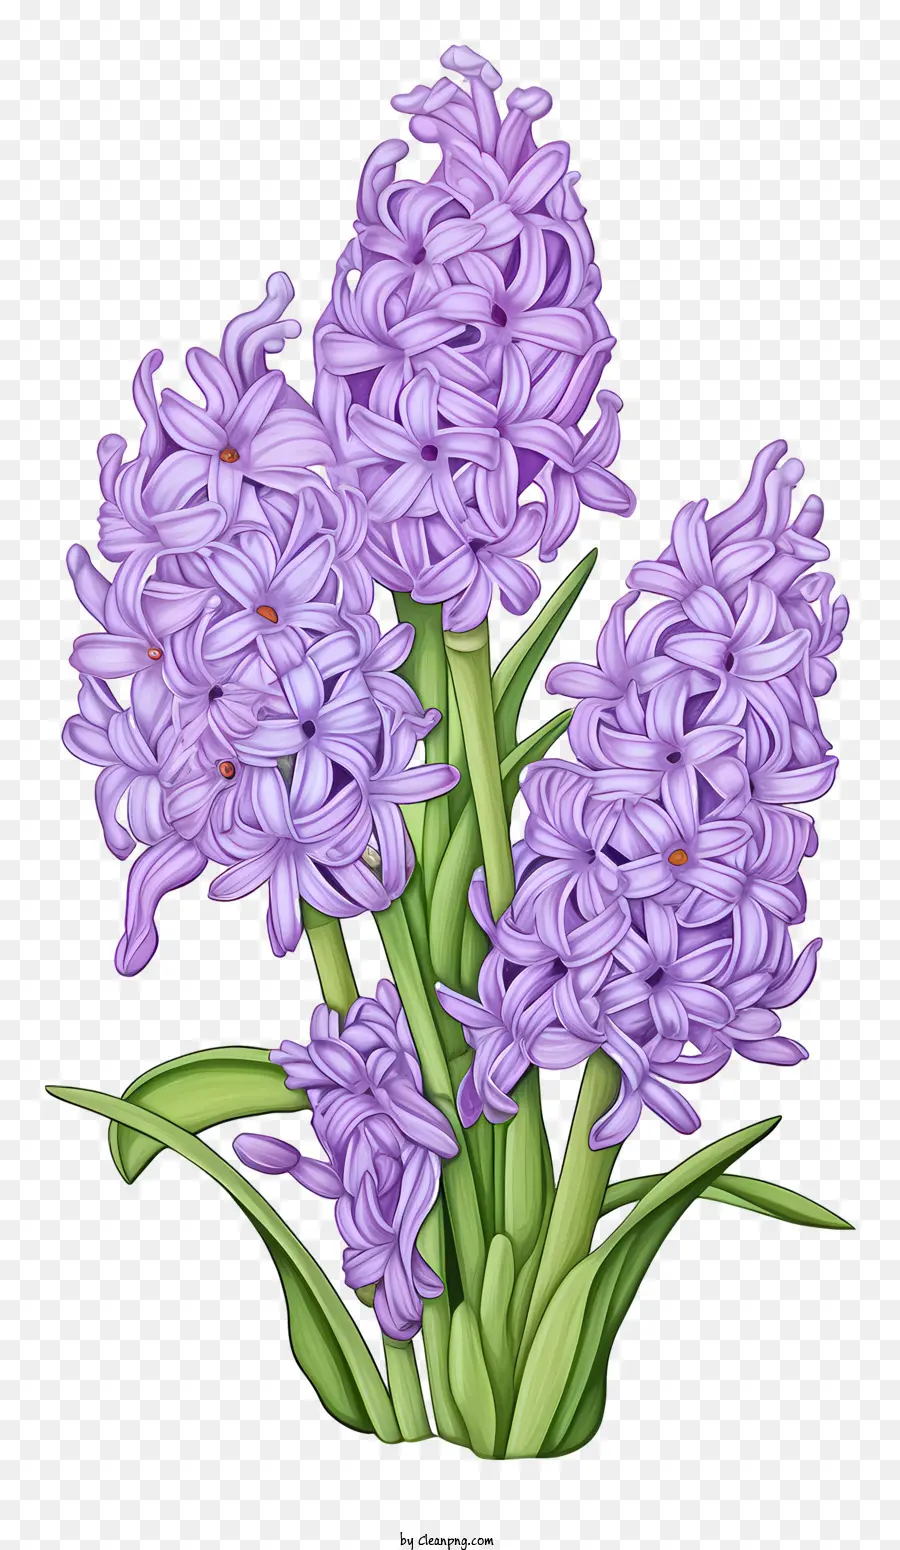 Wildblumen - Darstellung des wilden lila Hychras -Bouquet auf schwarzem Hintergrund